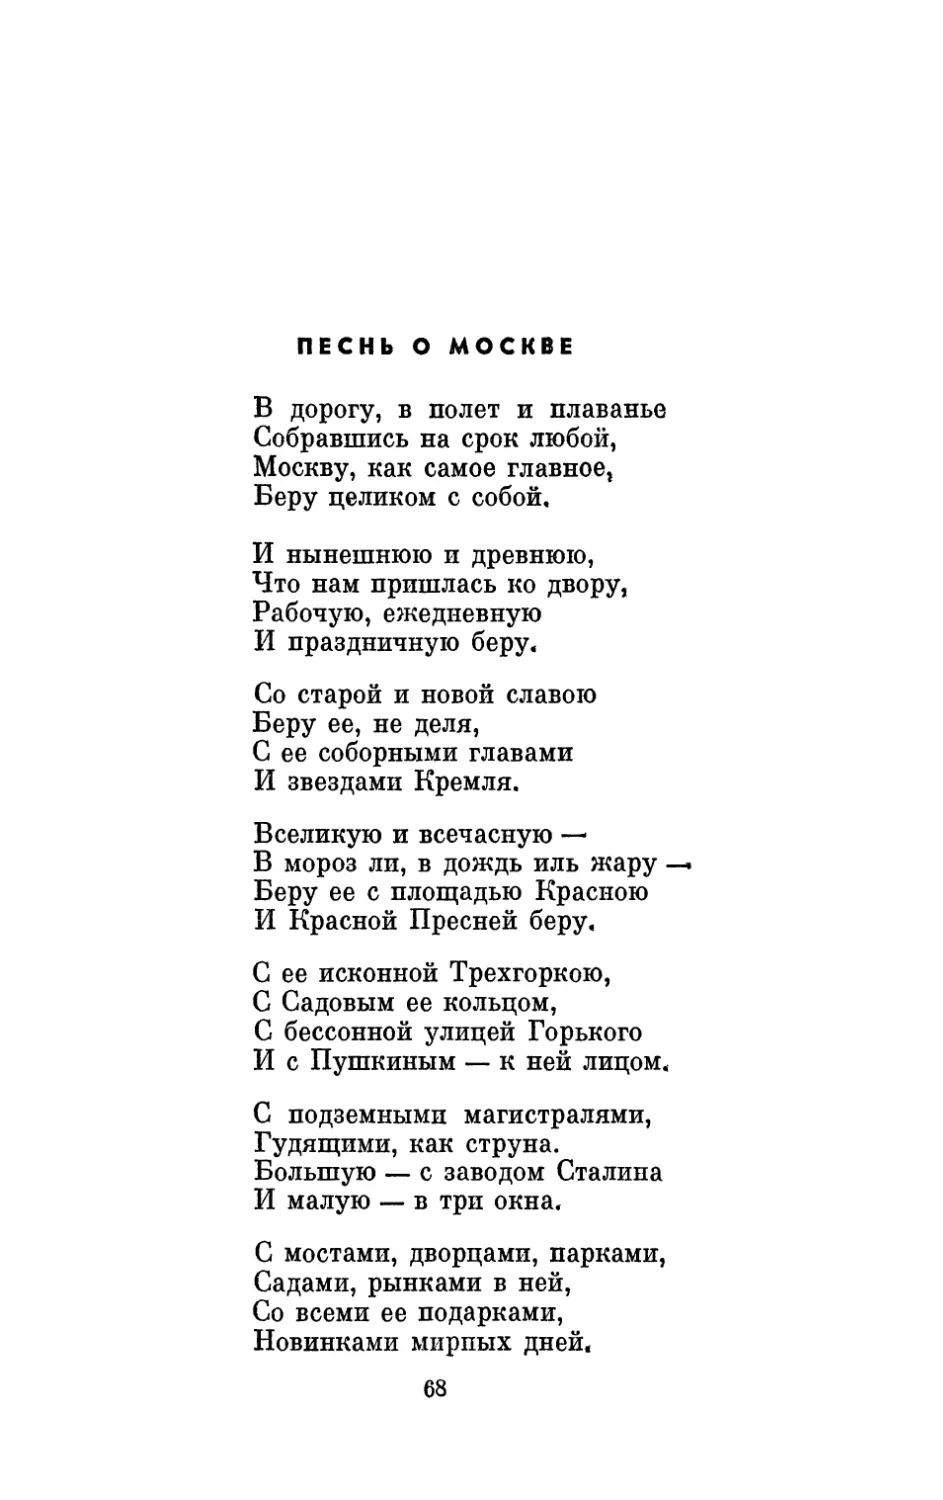 Песнь о Москве